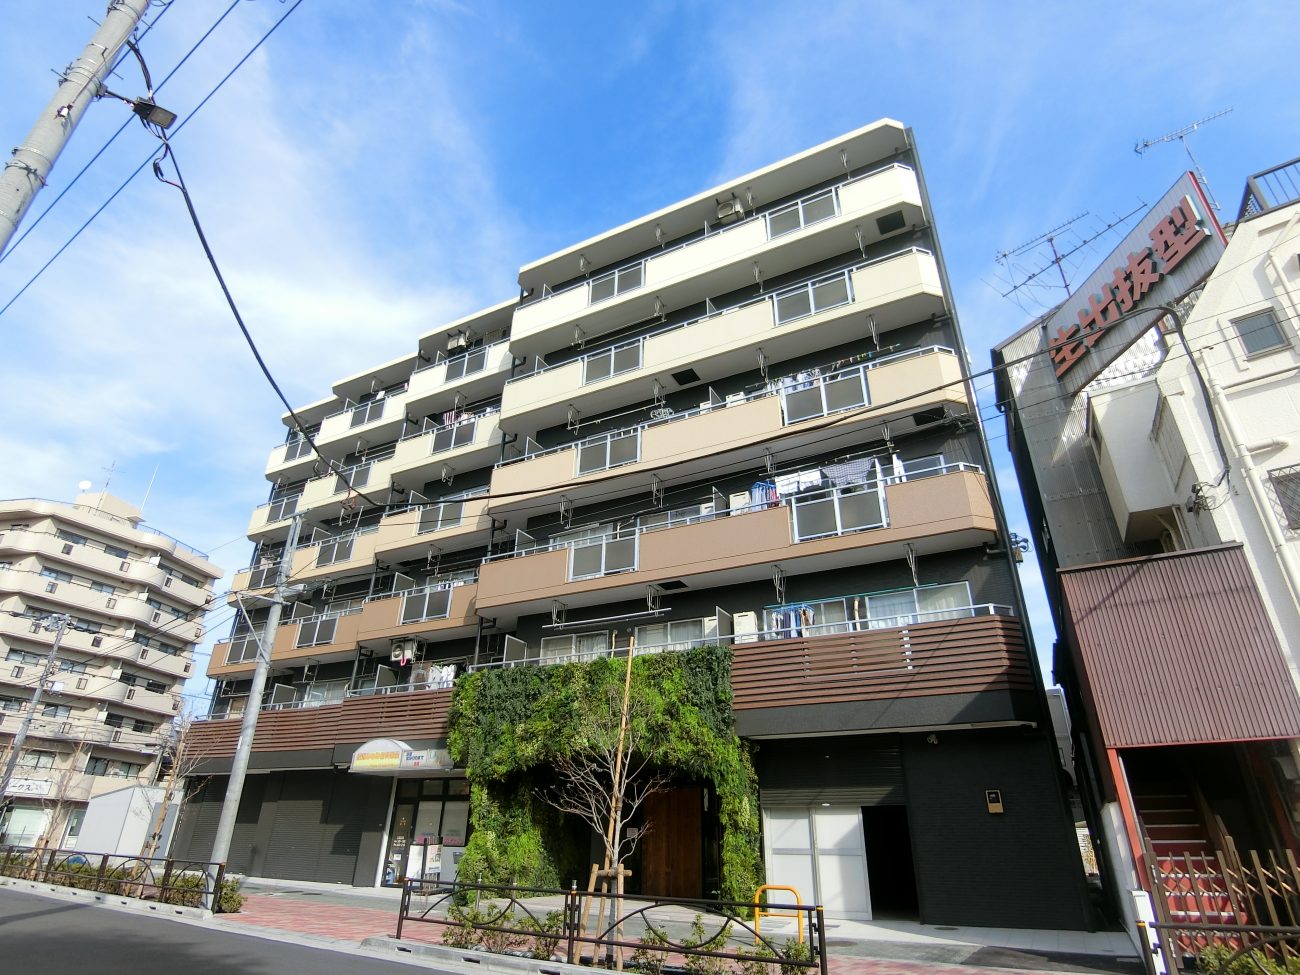 綾瀬 築30年 5階建てRCマンション 外構リニューアルの画像